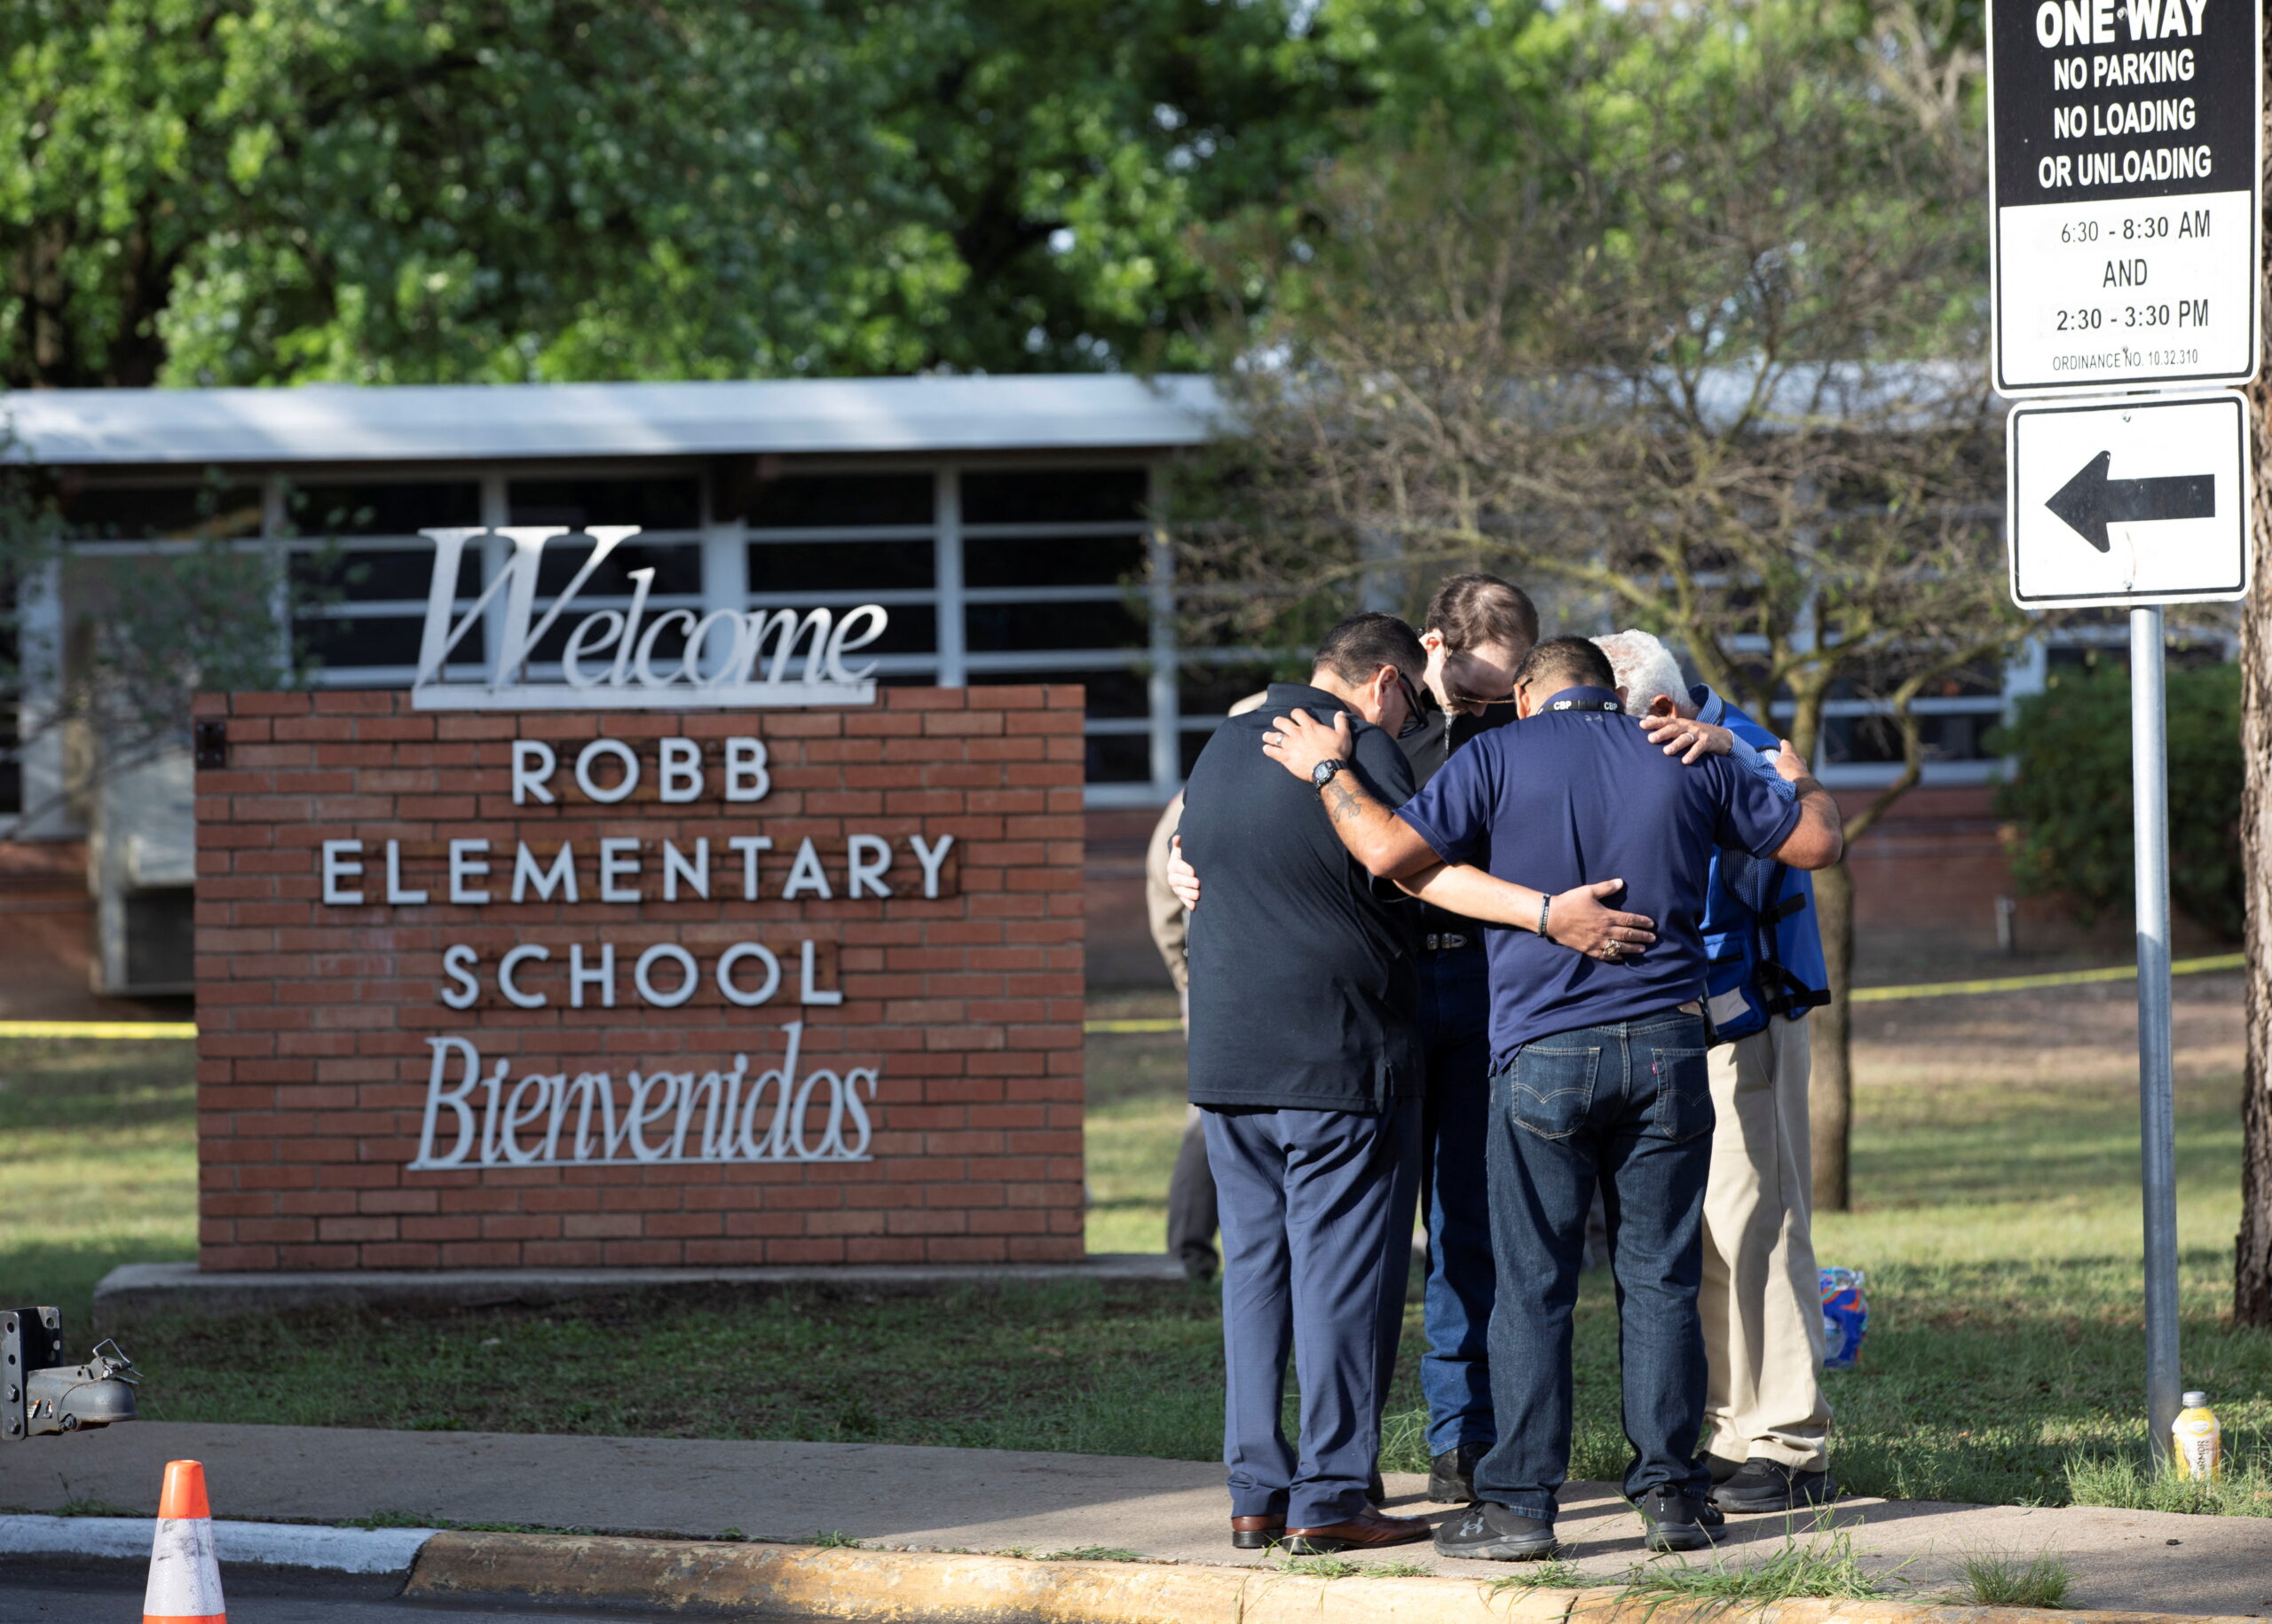 La masacre escolar en Texas, en imágenes